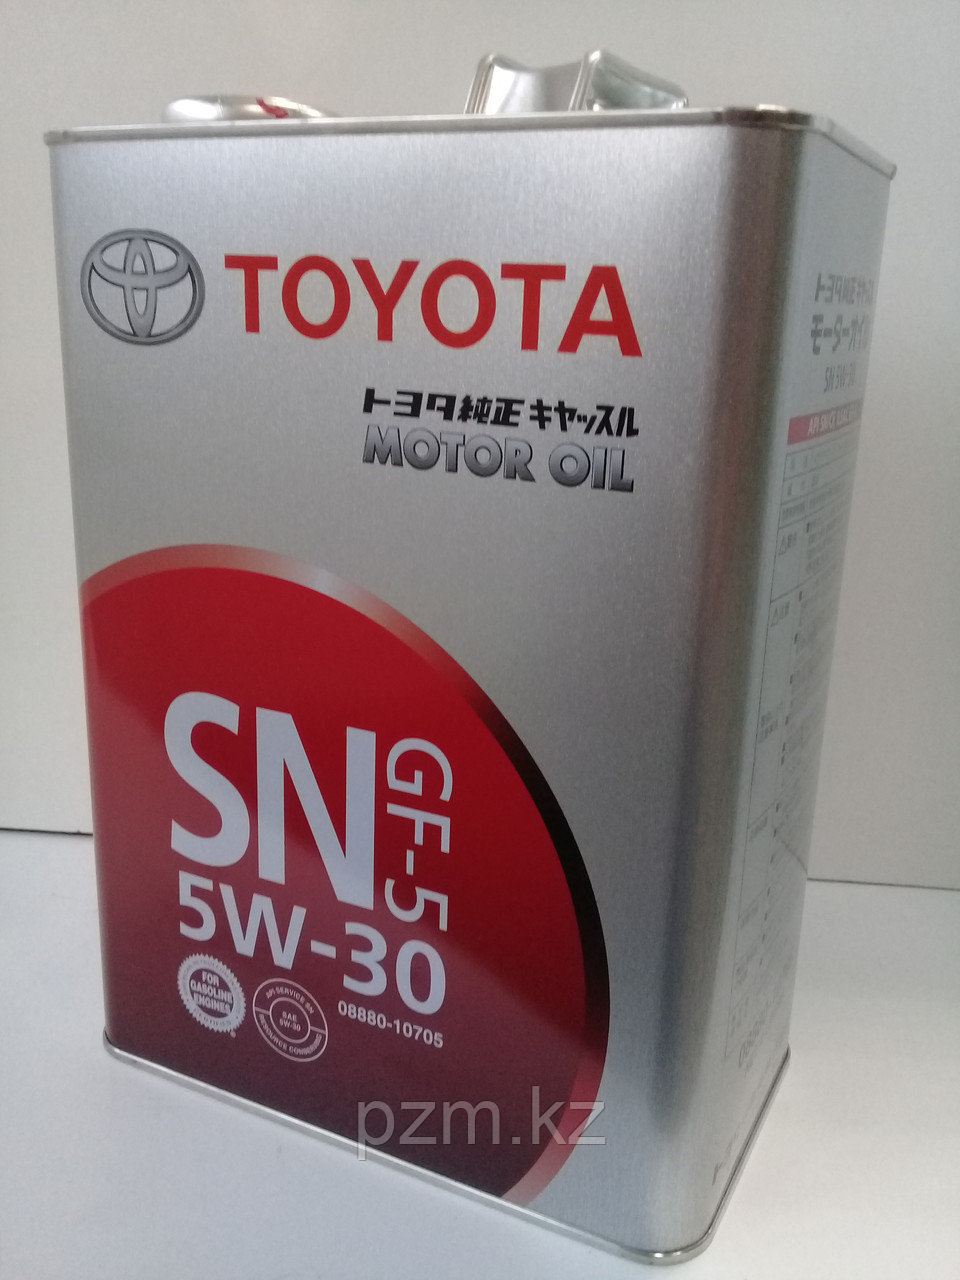 Замена масла в двигателе Toyota Matrix (масло + фильтр)  оригинальное моторное масло тойота 5W30